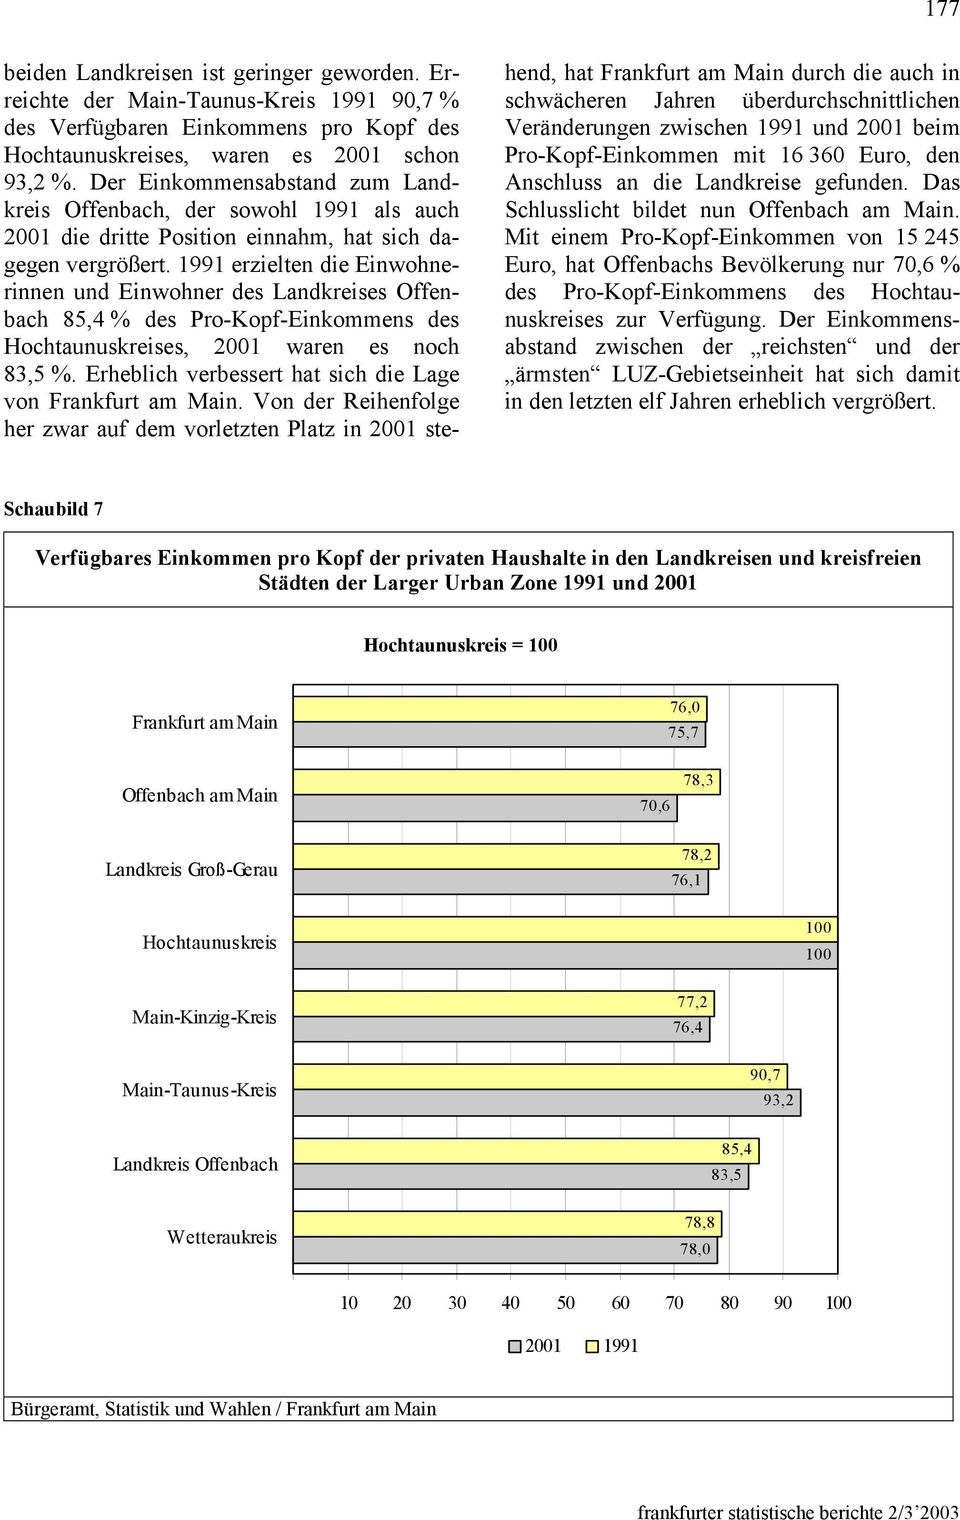 1991 erzielten die Einwohnerinnen und Einwohner des Landkreises Offenbach 85,4 % des Pro-Kopf-Einkommens des Hochtaunuskreises, 2001 waren es noch 83,5 %.